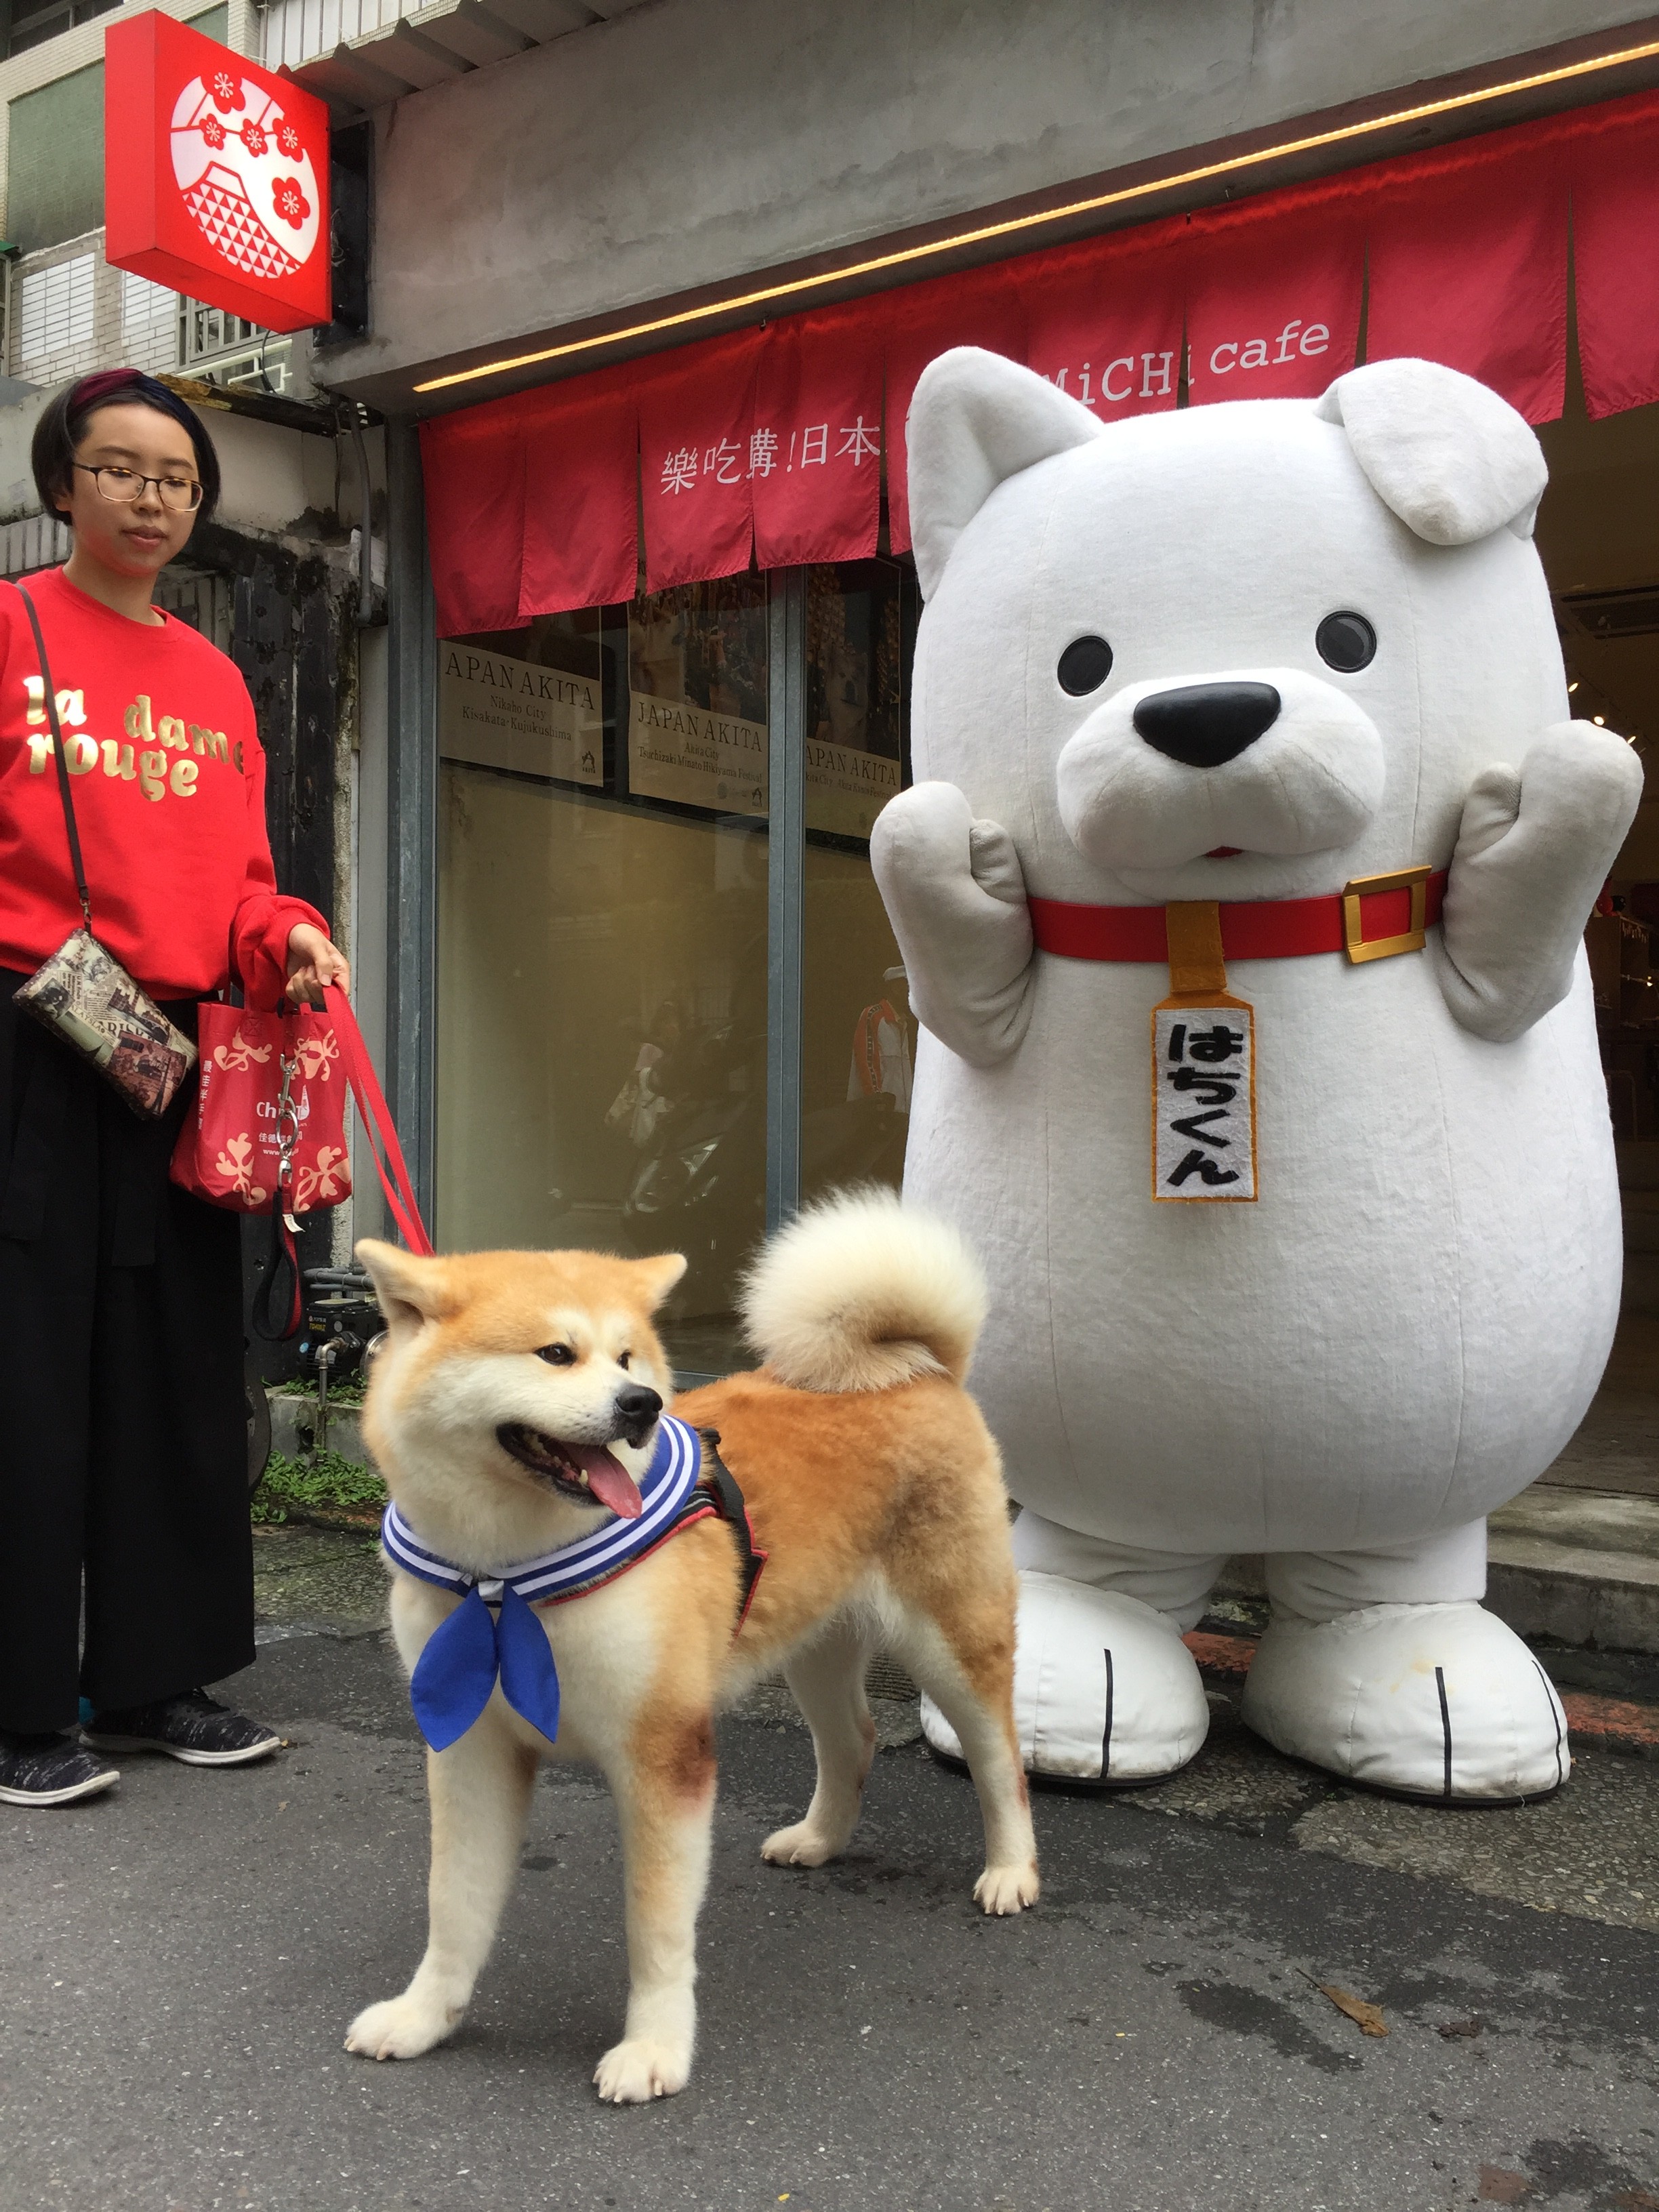 当社アンテナショップで秋田犬イベントを実施 吉日媒體集團 台湾 香港でのプロモーション 訪日インバウンド送客を支援